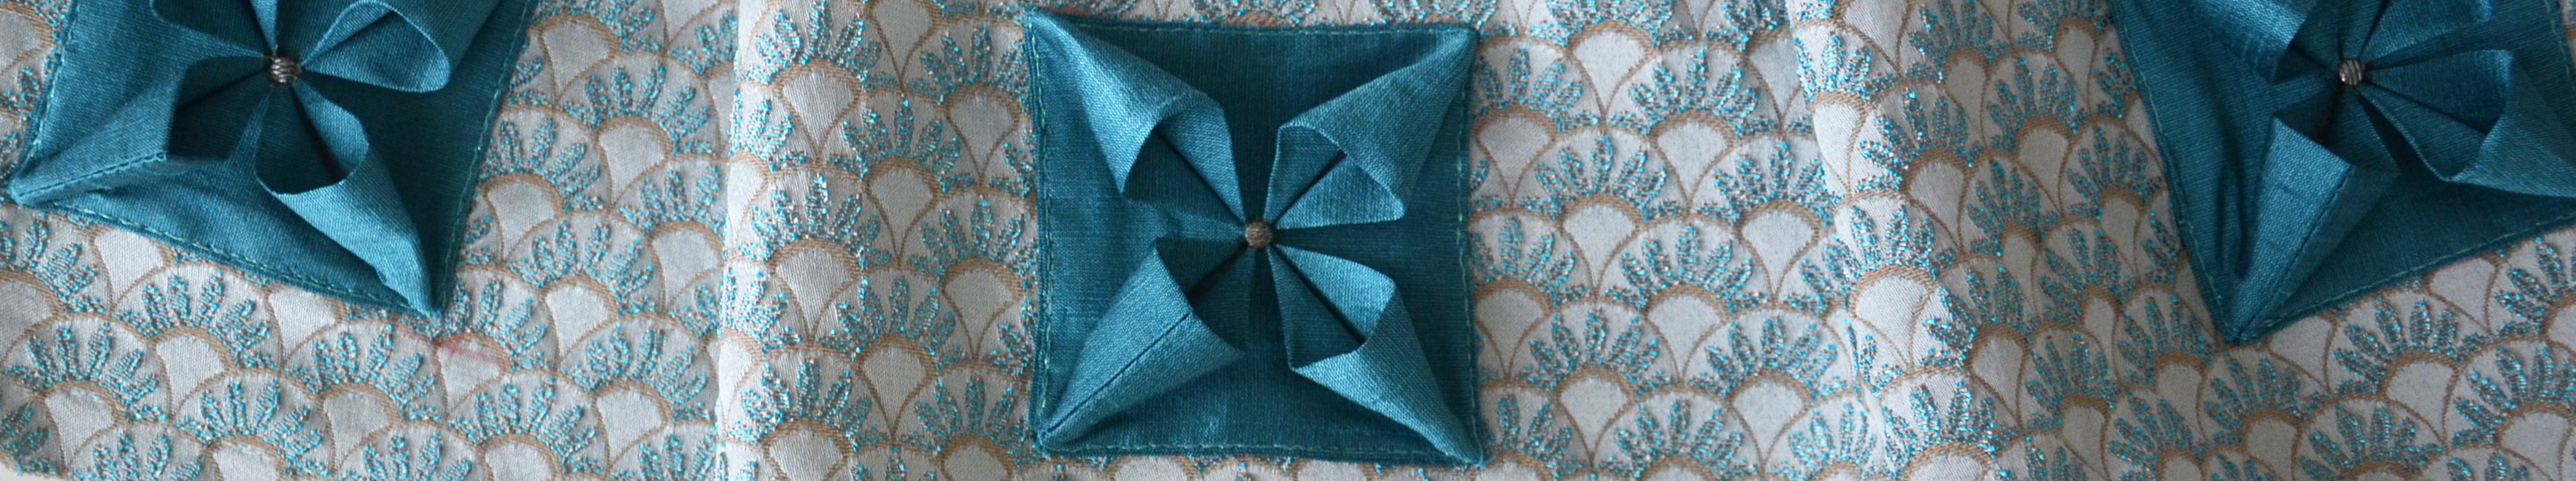 Оригами из ткани идеи для стильного интерьера